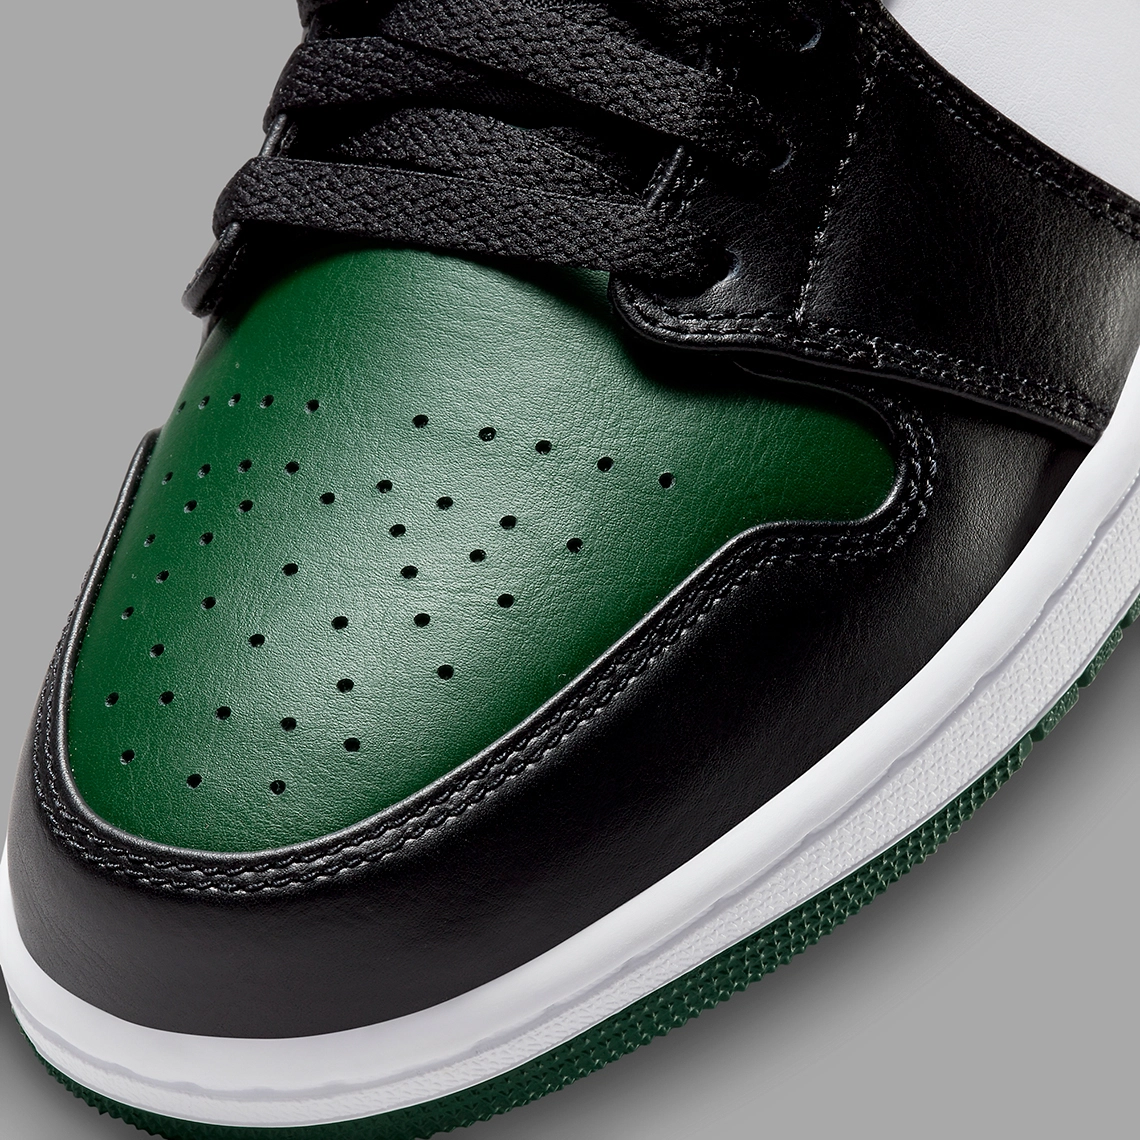 Imágenes oficiales de las Air Jordan 1 Low “Green Toe”, Zapas News